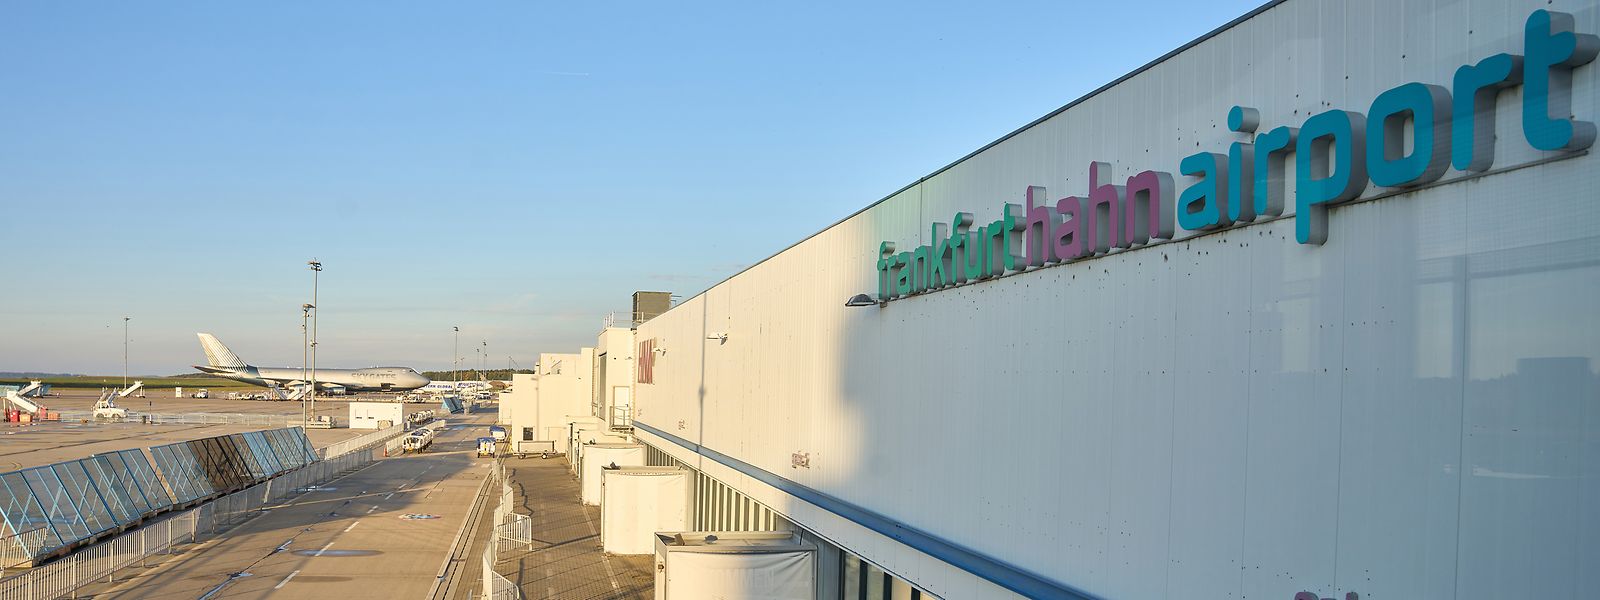 Schon seit Herbst 2021 ist der Hunsrück-Flughafen Hahn insolvent - nun beraten Gläubiger erneut über seinen stockenden Verkauf. 